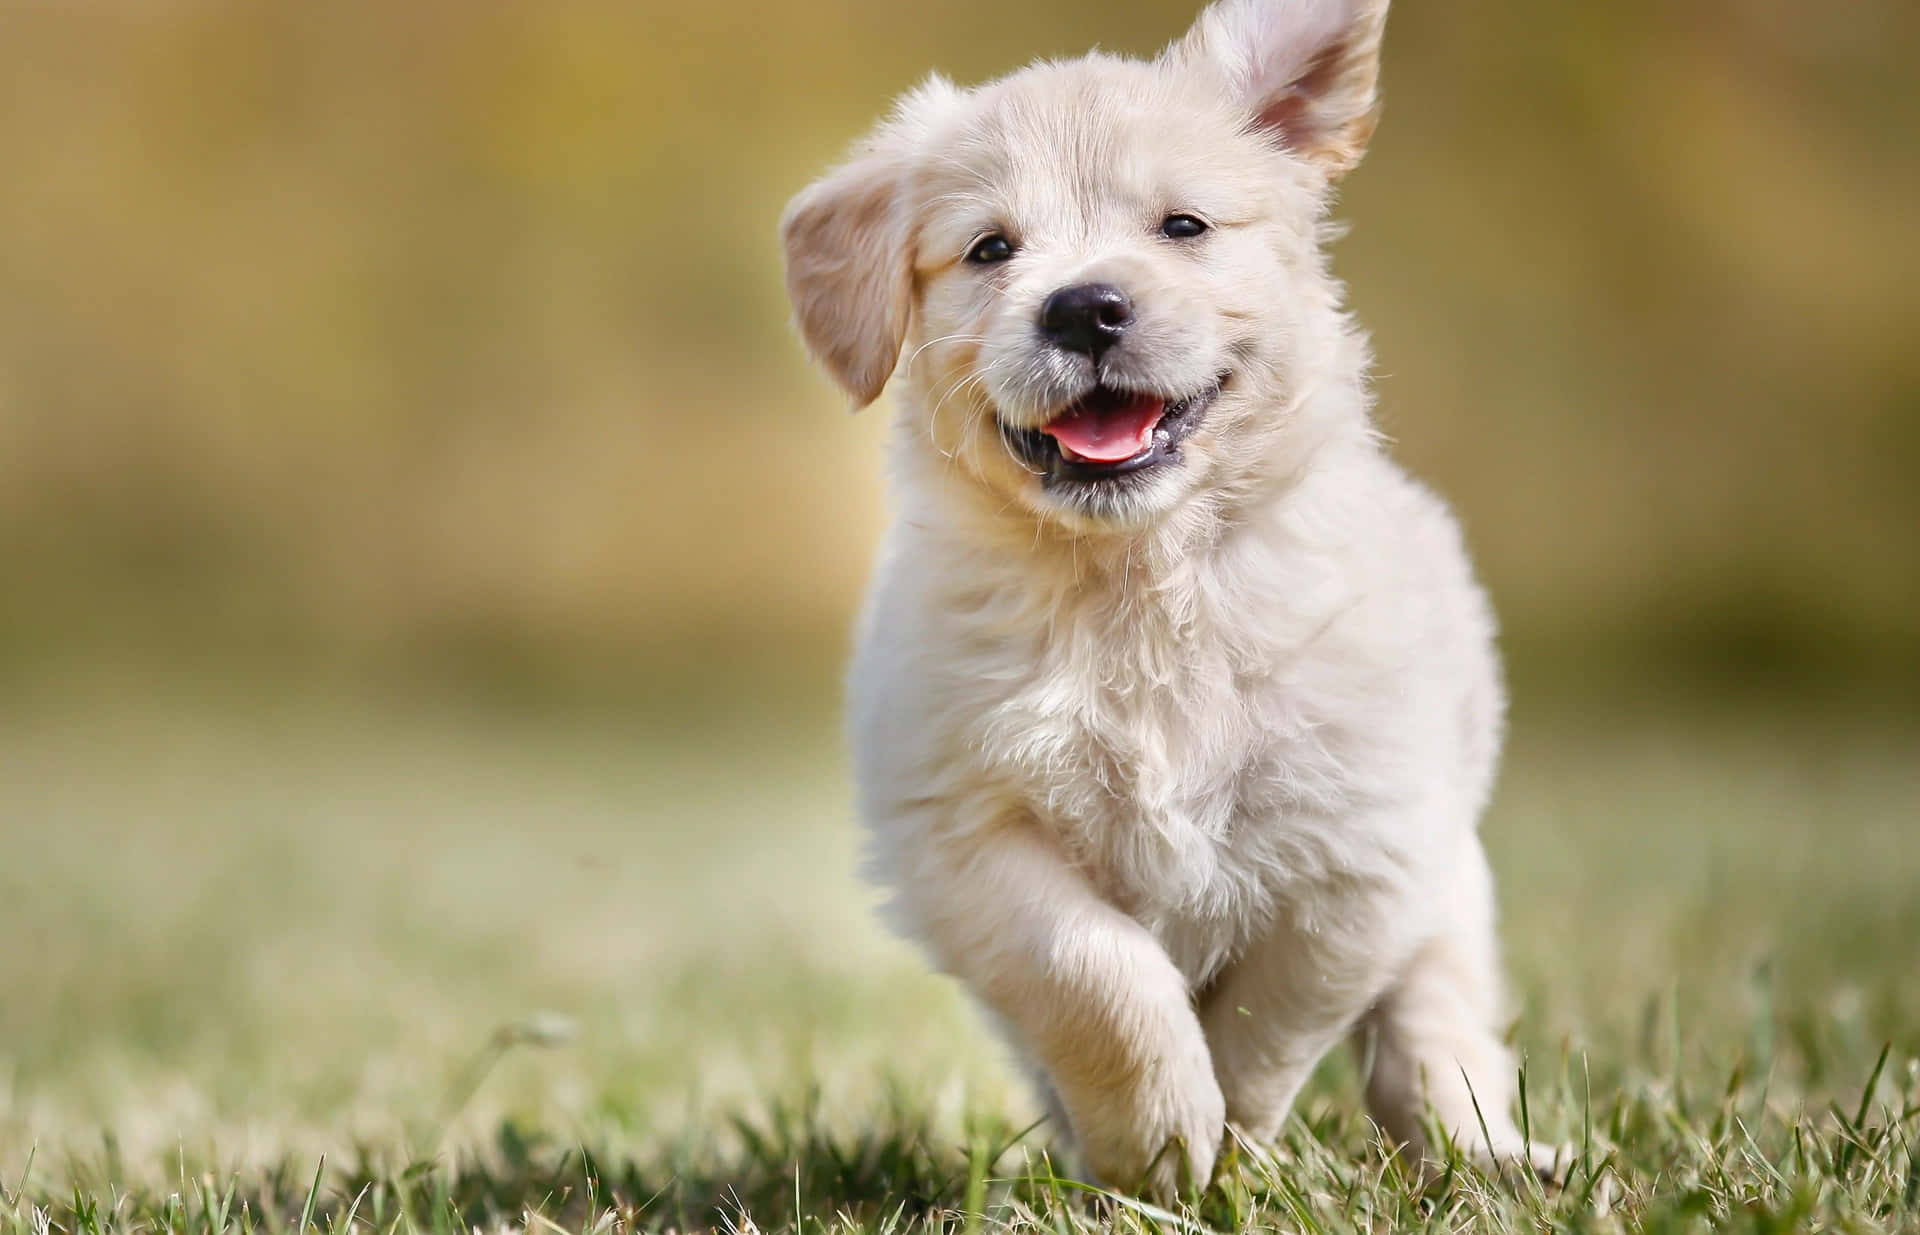 Joyful Puppy Running Through Grass4 K Wallpaper